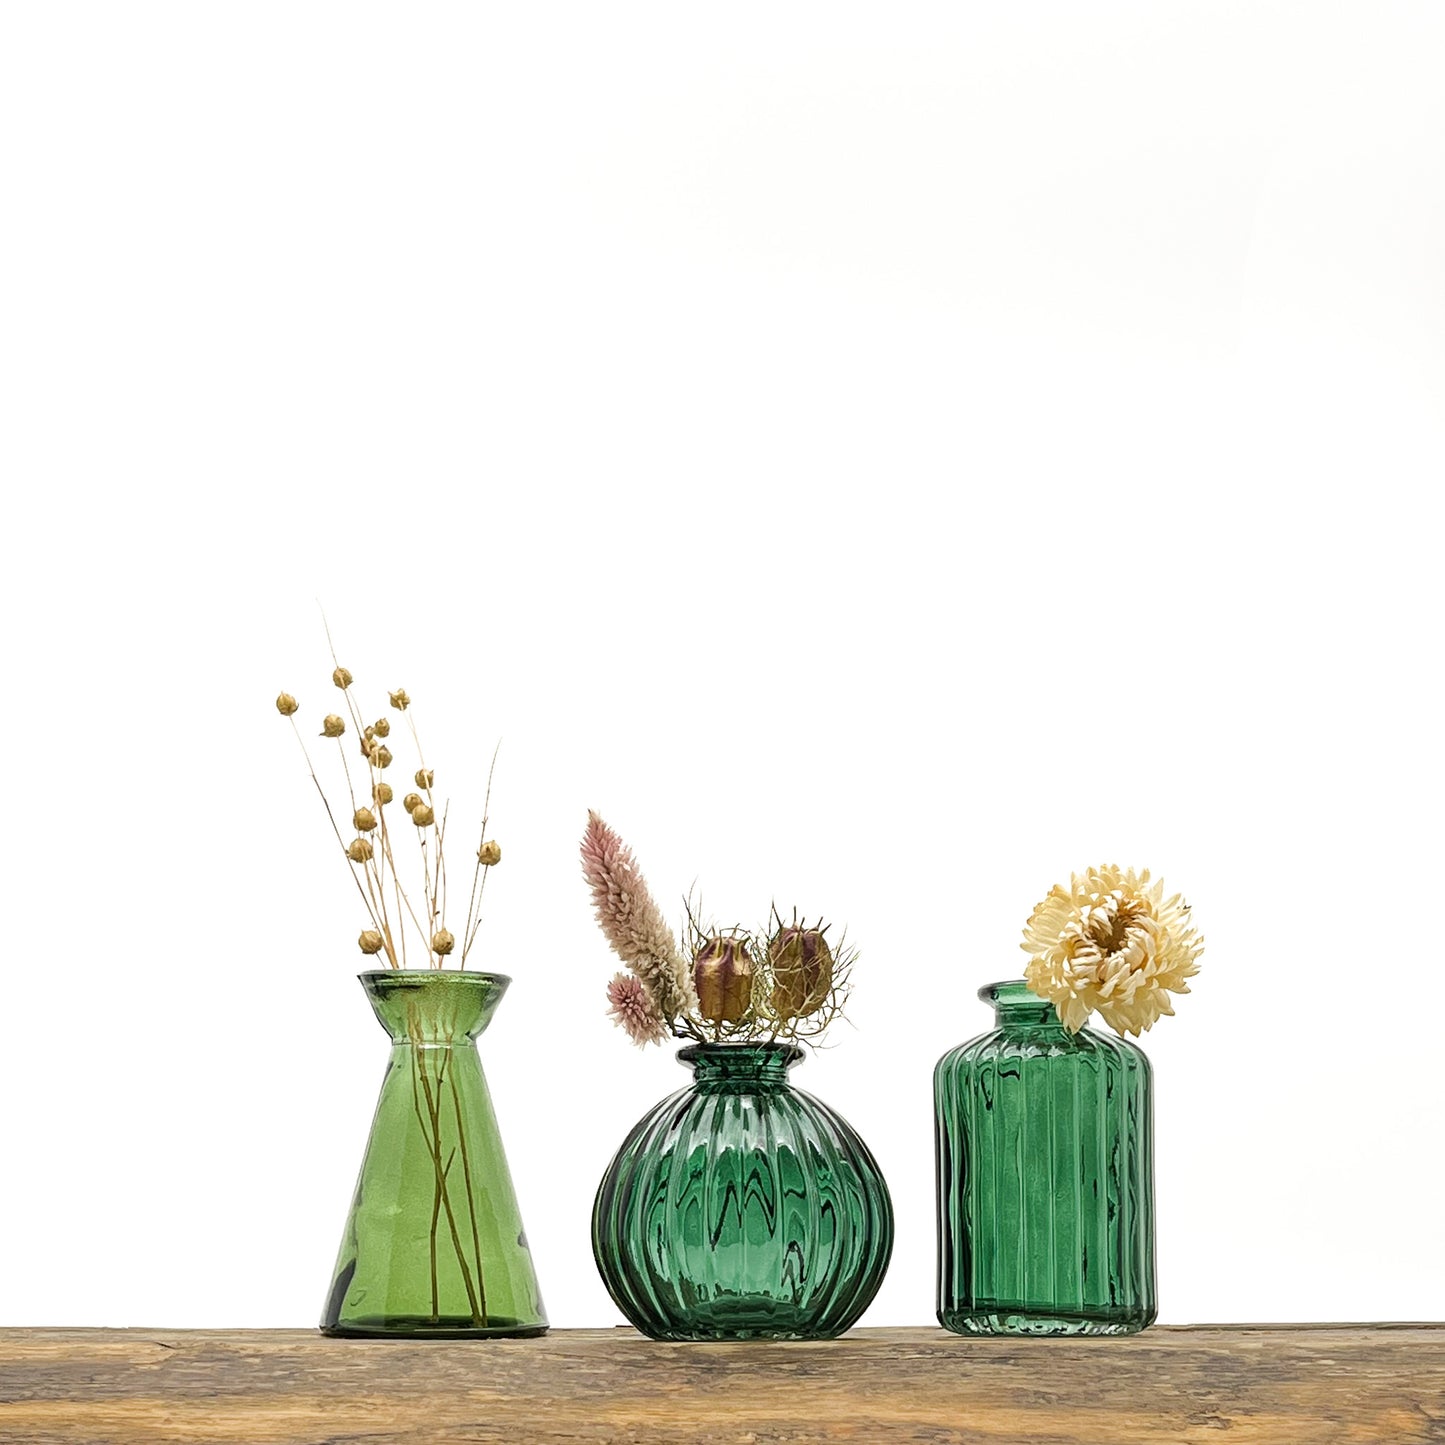 Ensemble de 6 vases de couleurs et formes variées très harmonieuses. Livrés avec fleurs séchées offertes.